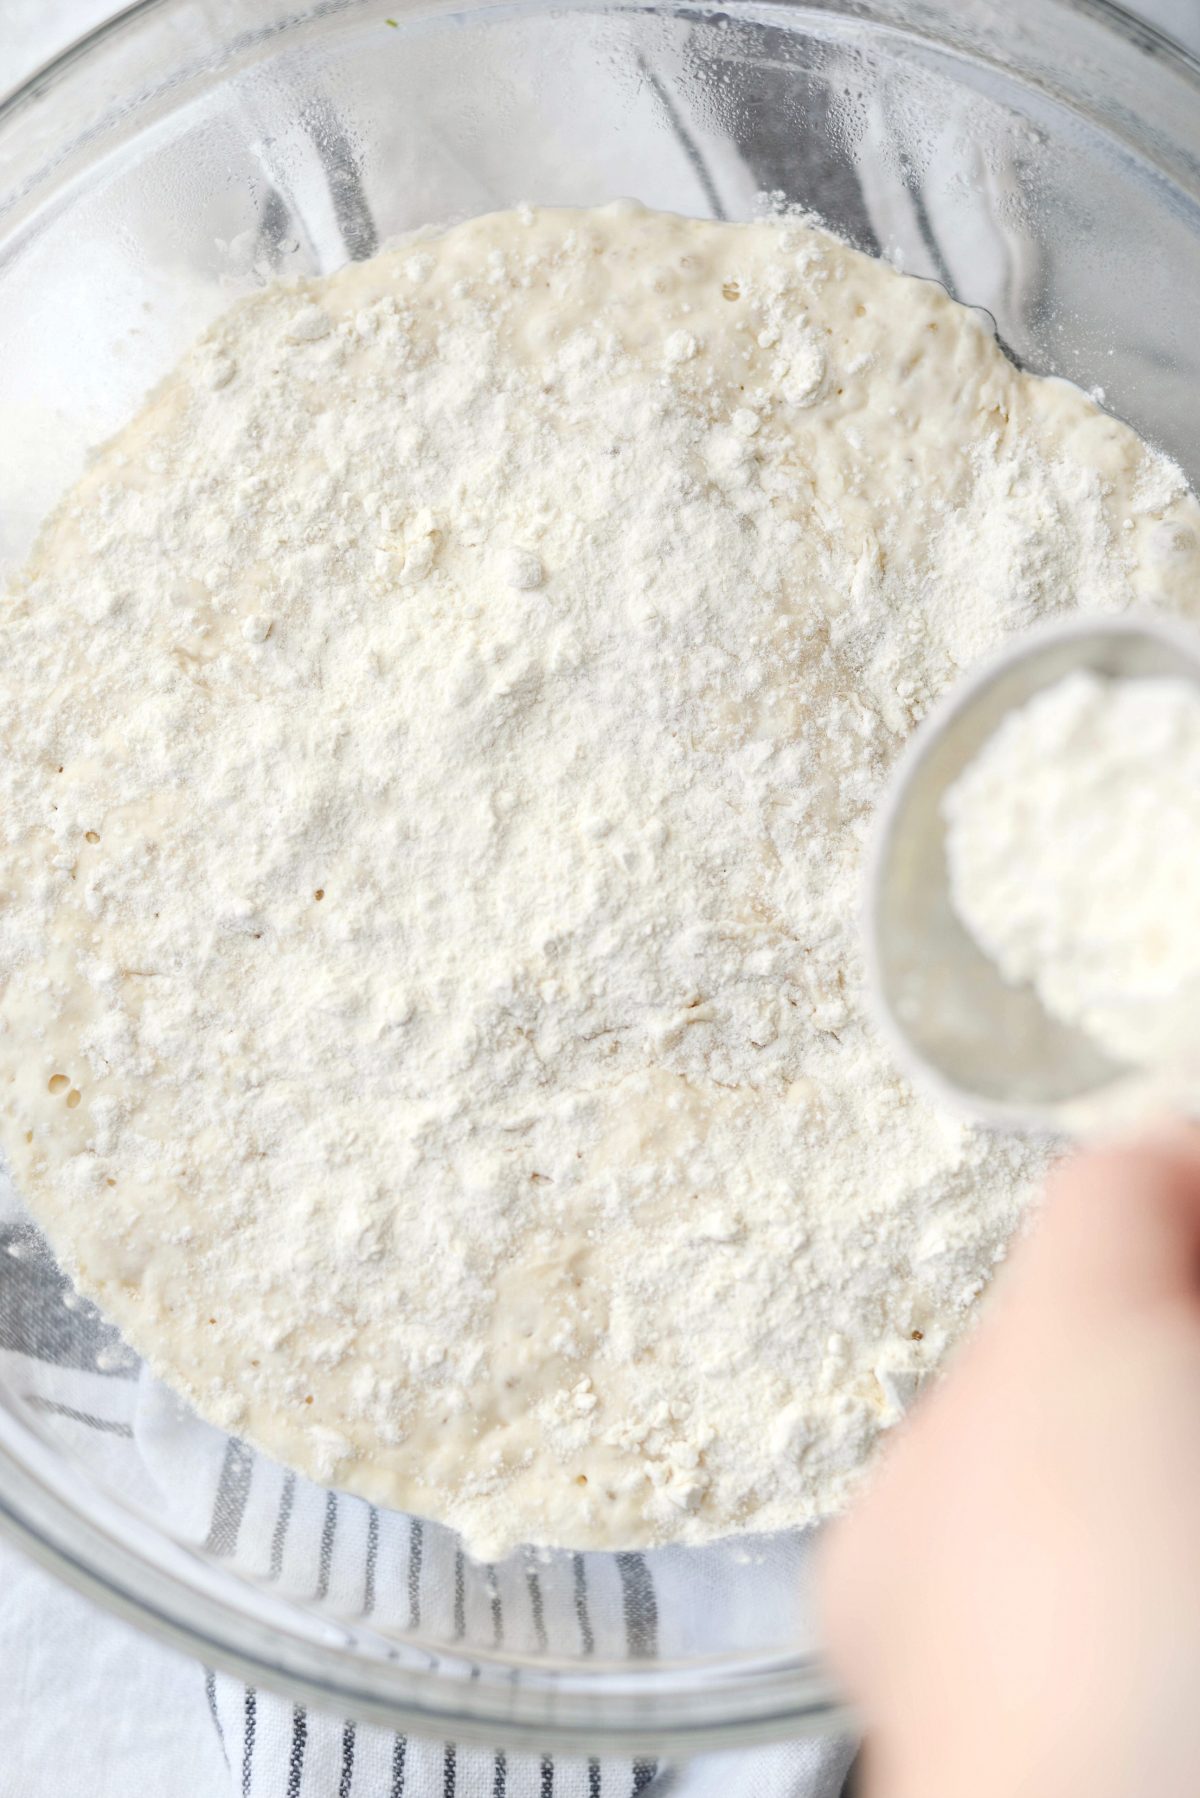 sprinkle with flour